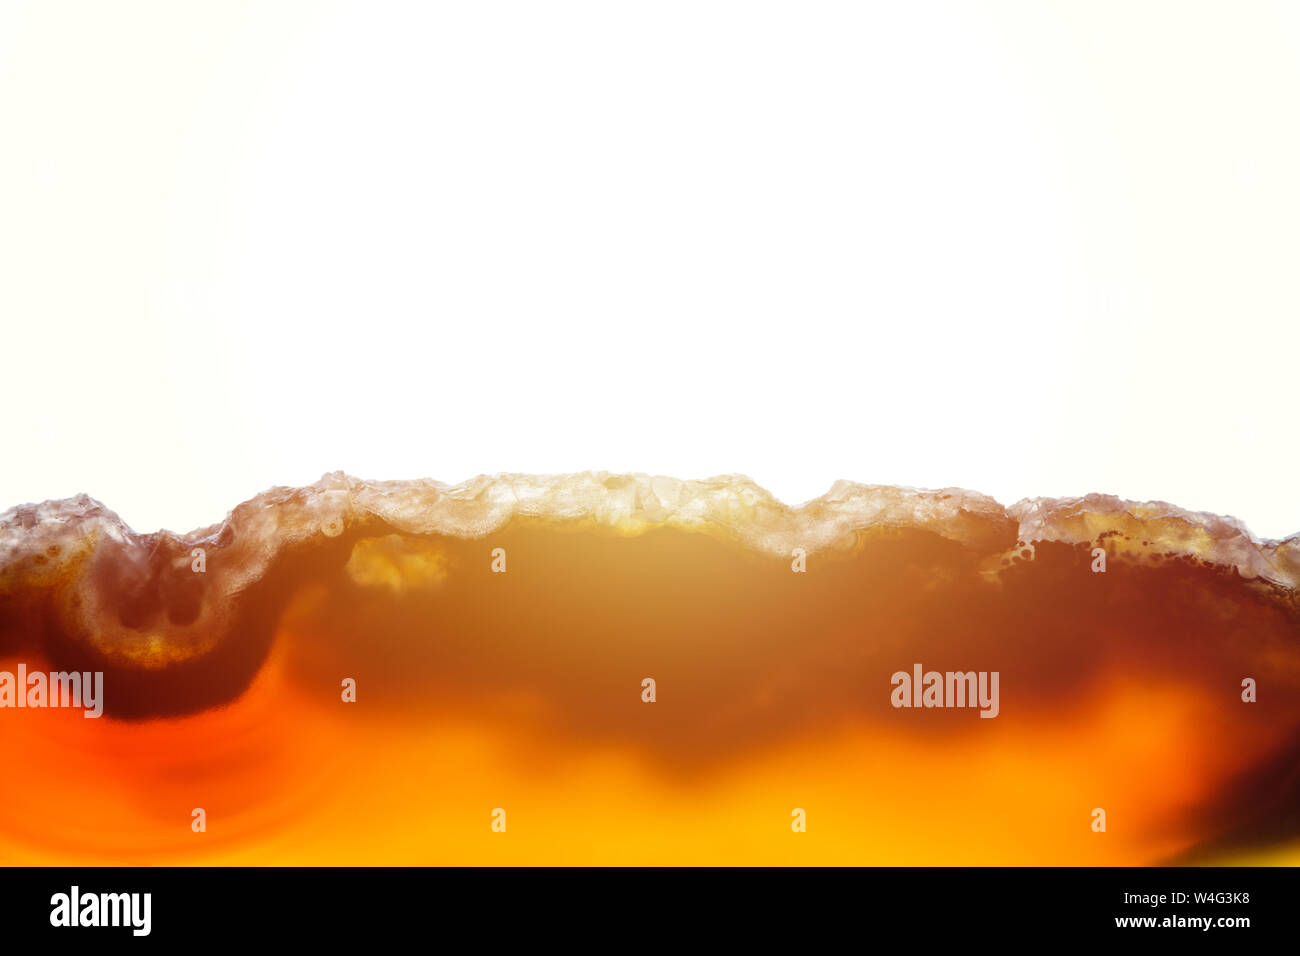 Zusammenfassung Hintergrund, braun und orange Achat Scheibe mineral Querschnitt mit Sunbeam auf weißem Hintergrund Stockfoto